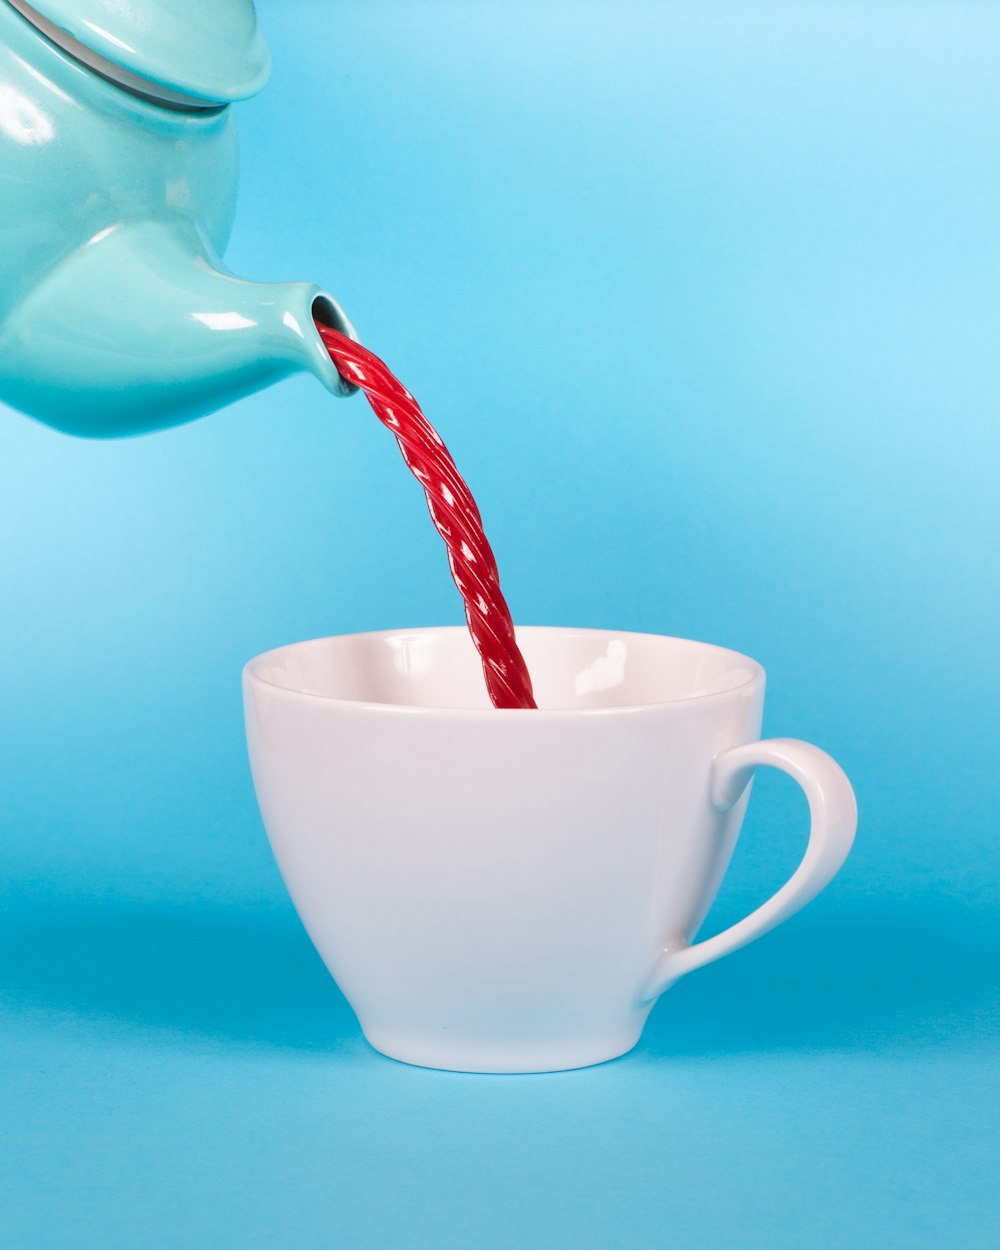 tetera verde vertiendo líquido rojo a la fotografía de primer plano de la taza de té blanca